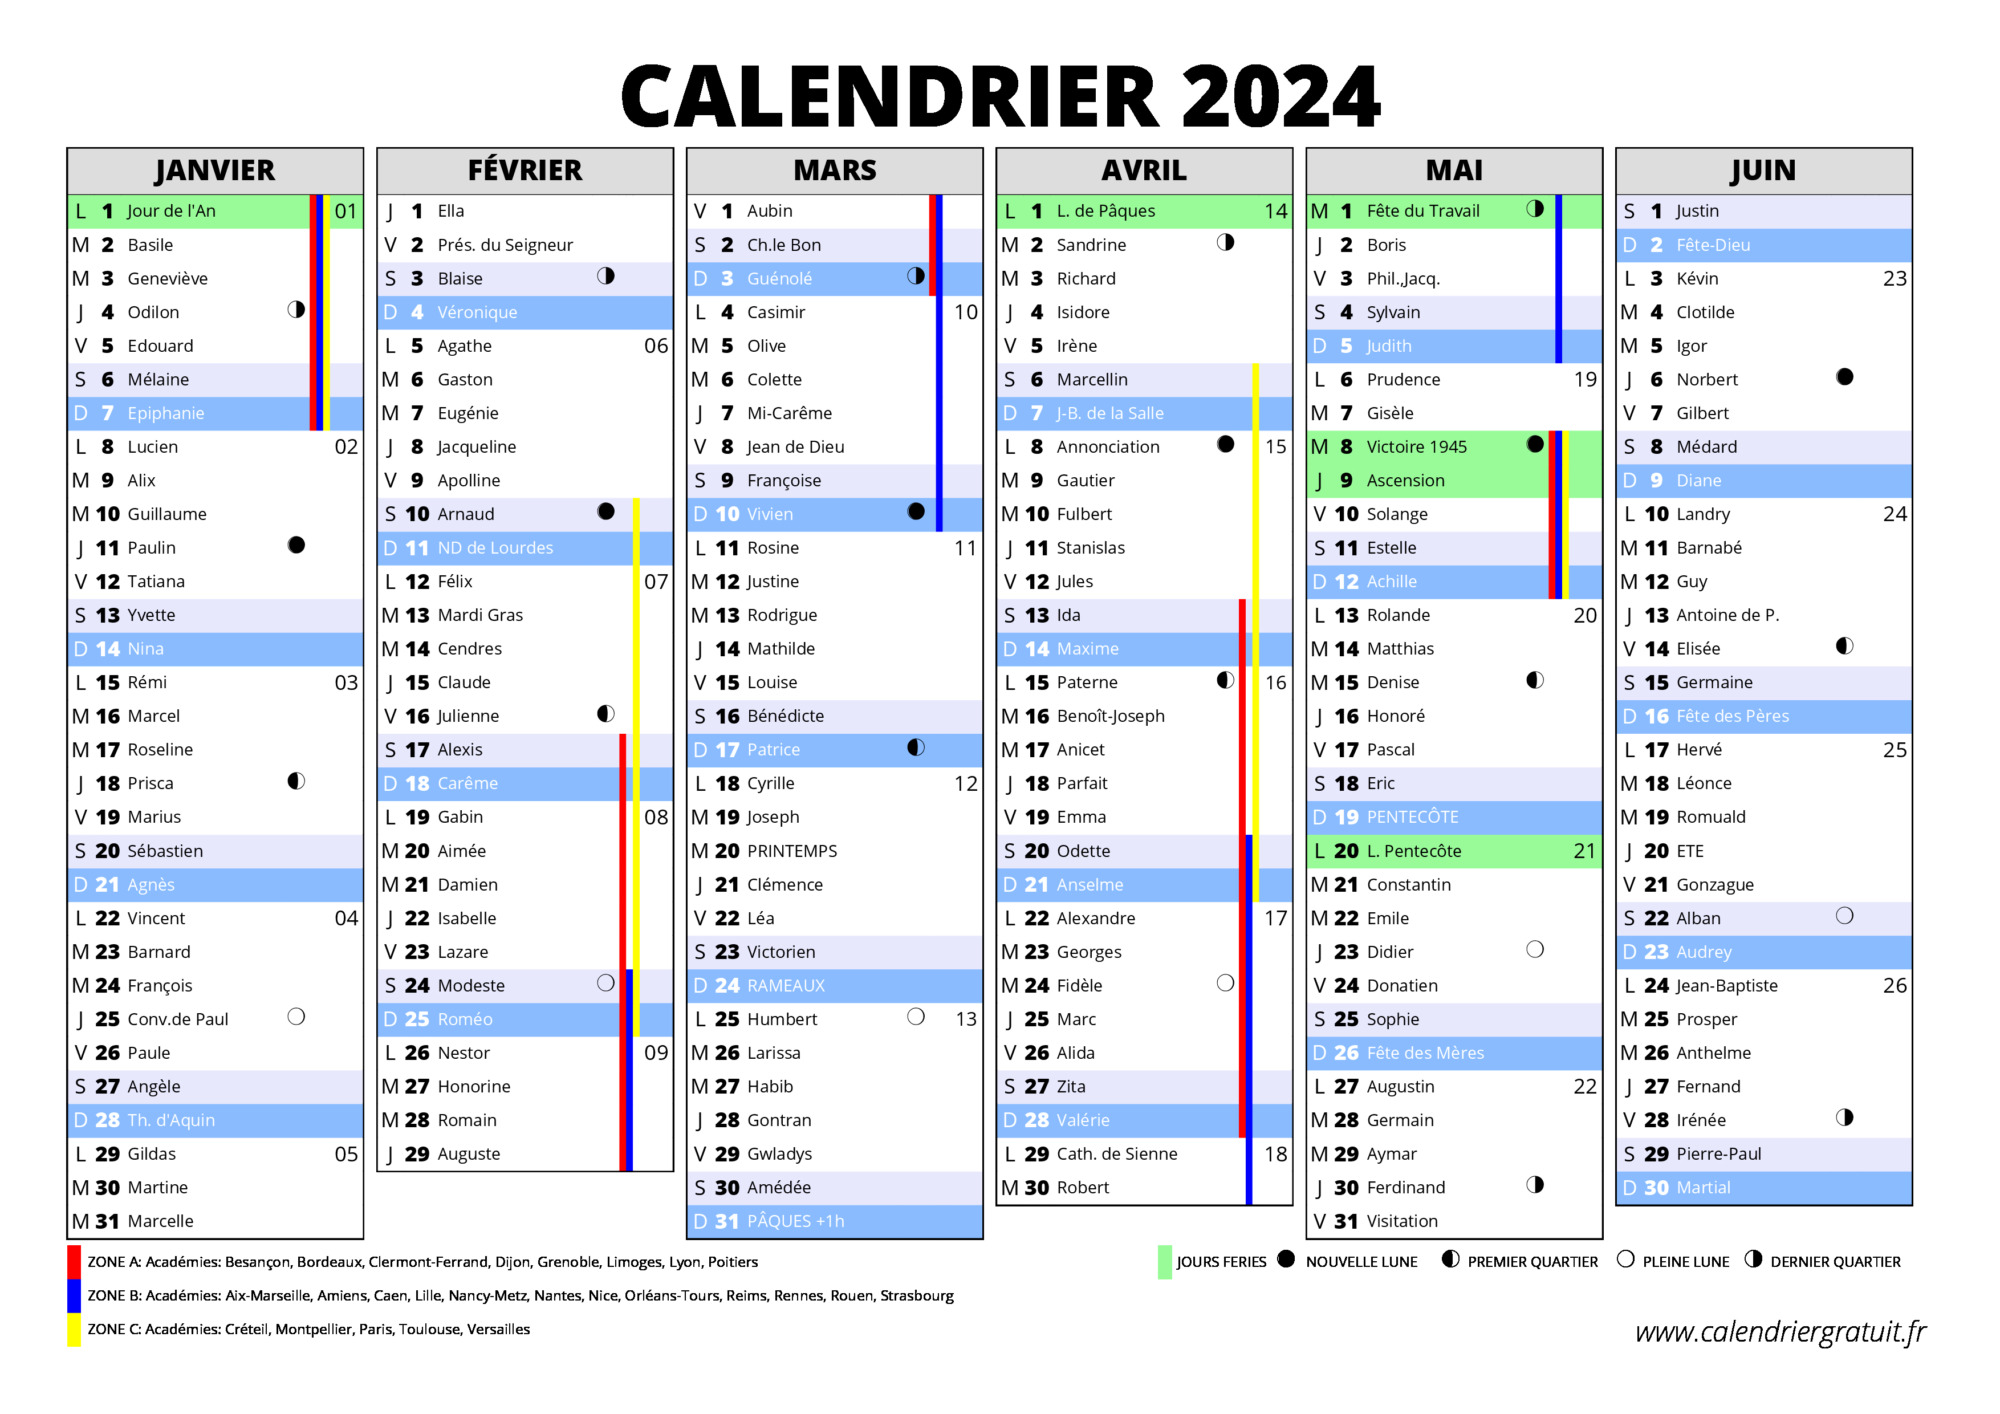 Le calendrier 2024 représente clairement la limite pour les pilotes